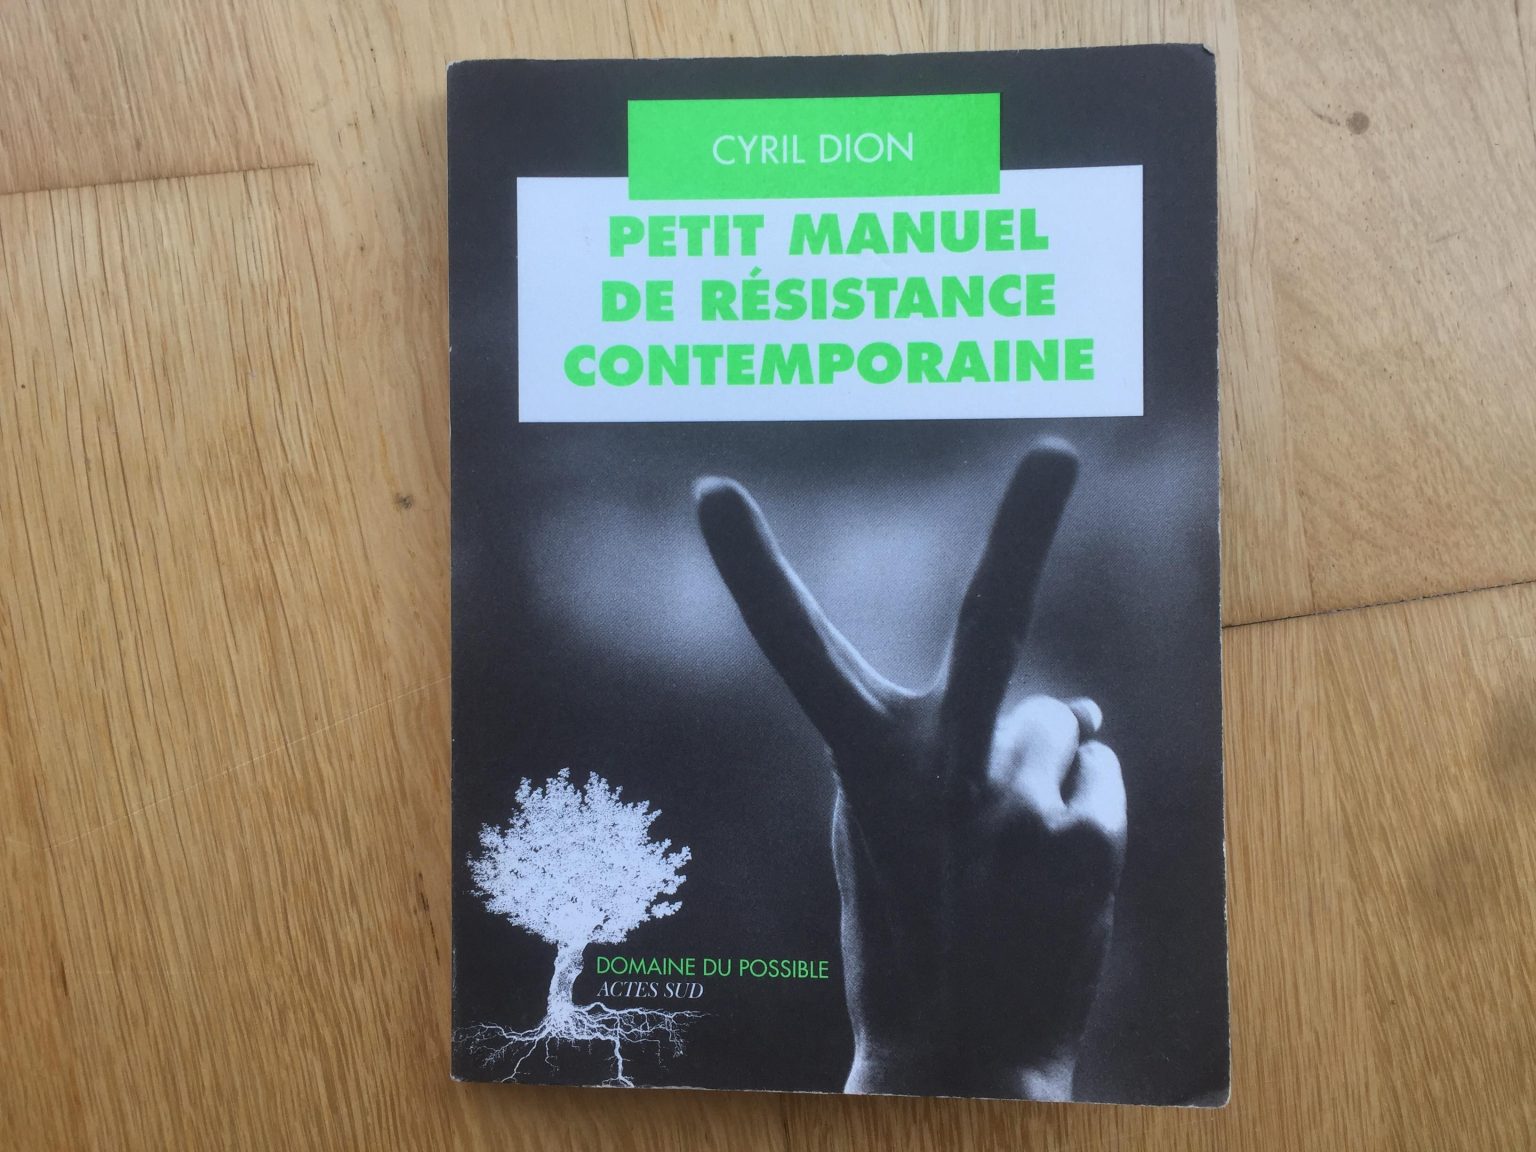 Petit manuel de résistance contemporaine by Cyril Dion